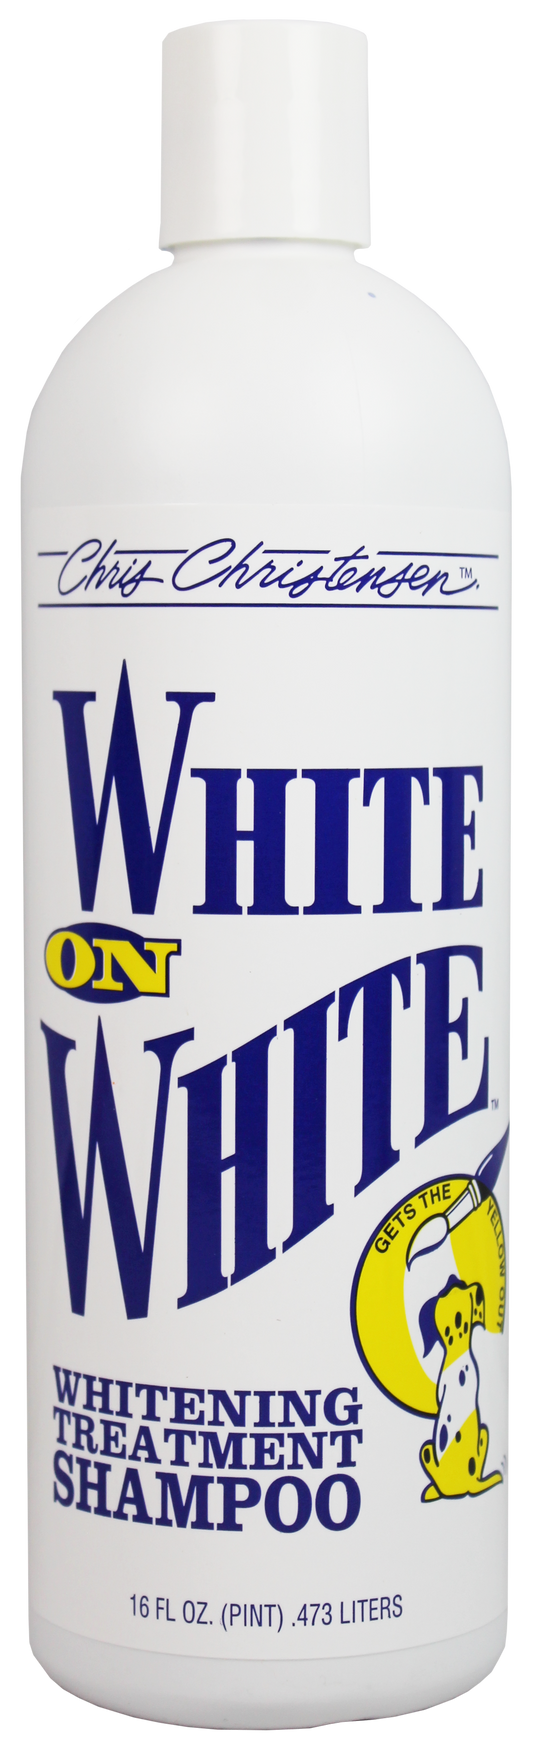 White On White (Removes yellow and whitens white)